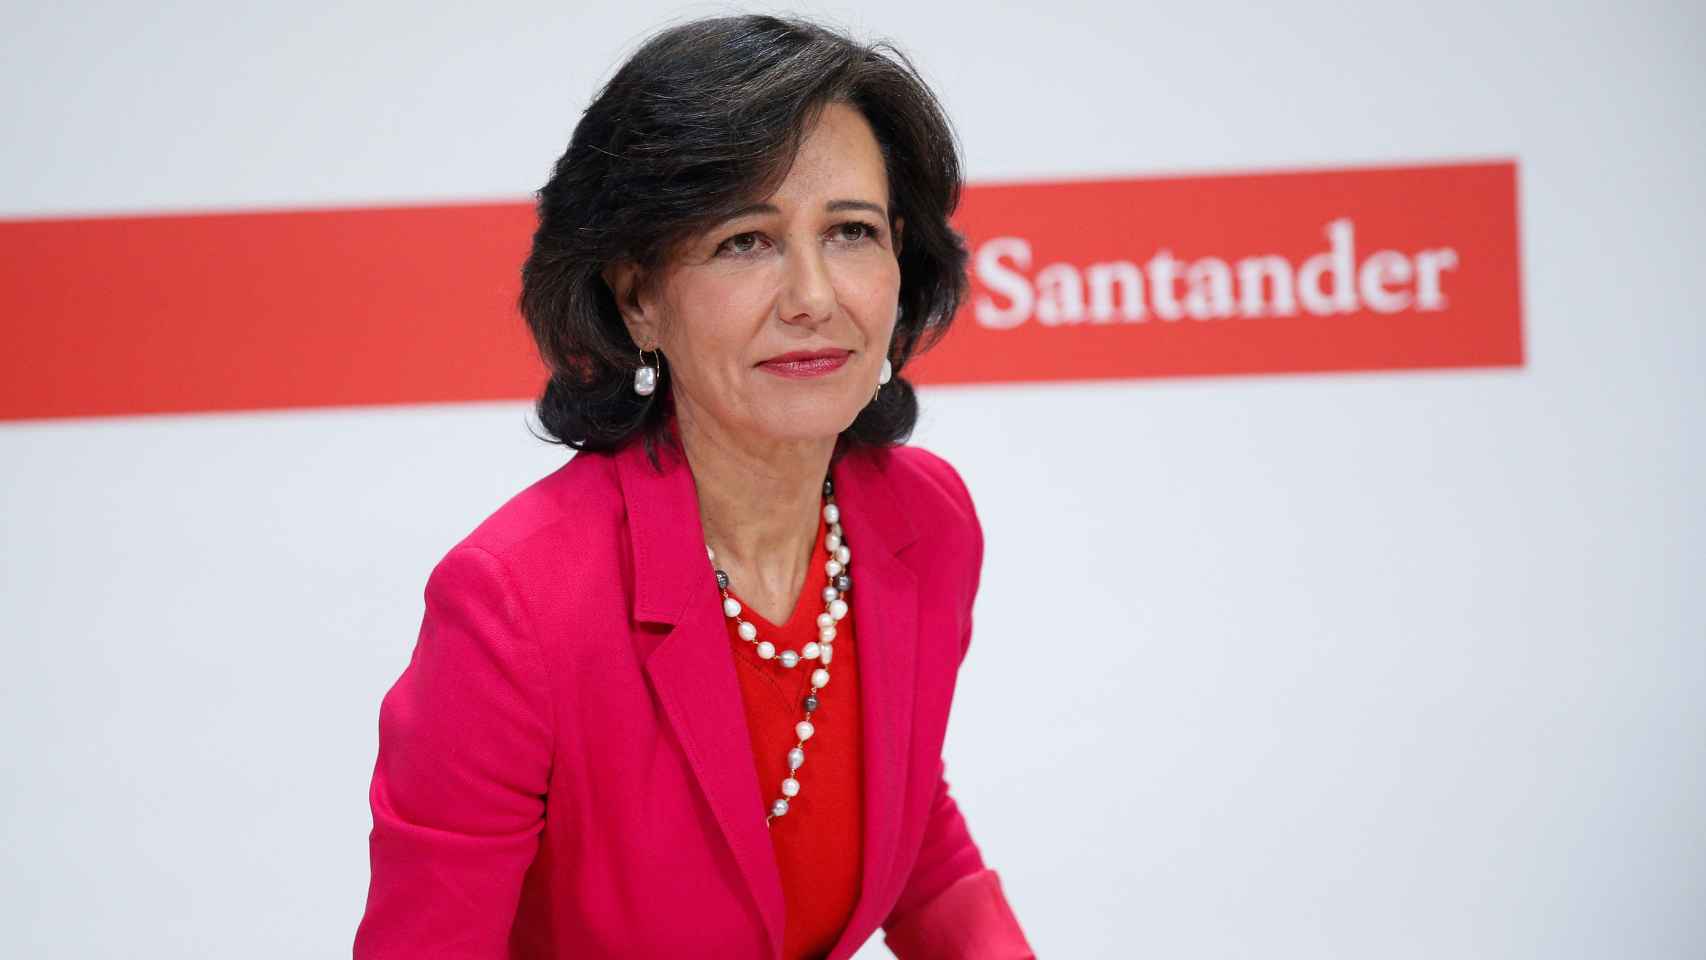 La presidenta de Santander, Ana Botín, durante la comparecencia de hoy.